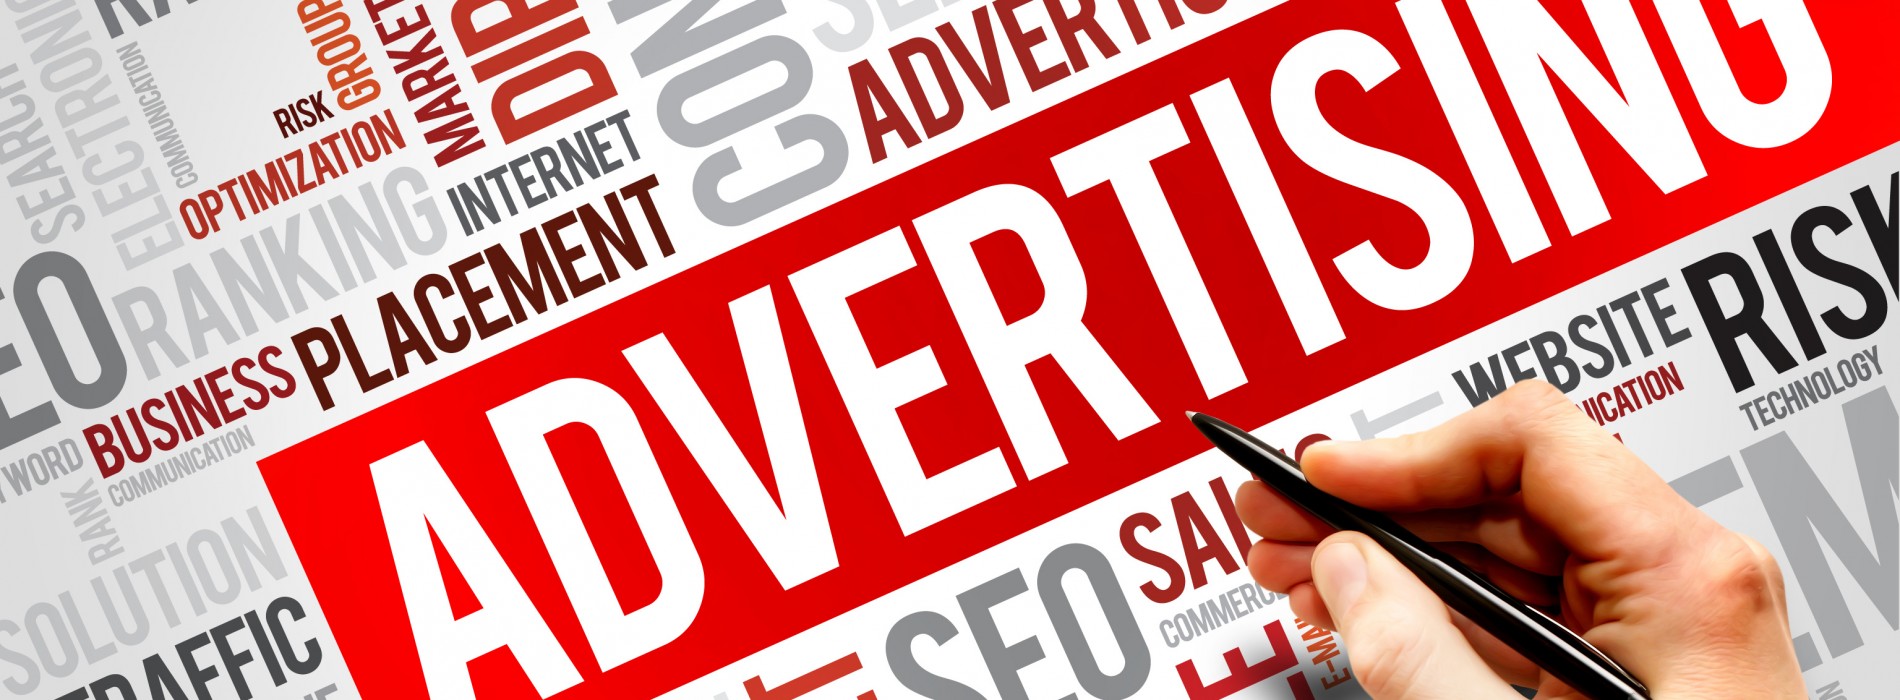 Reklama w Internecie – wszystkim powinno zależeć na jakości